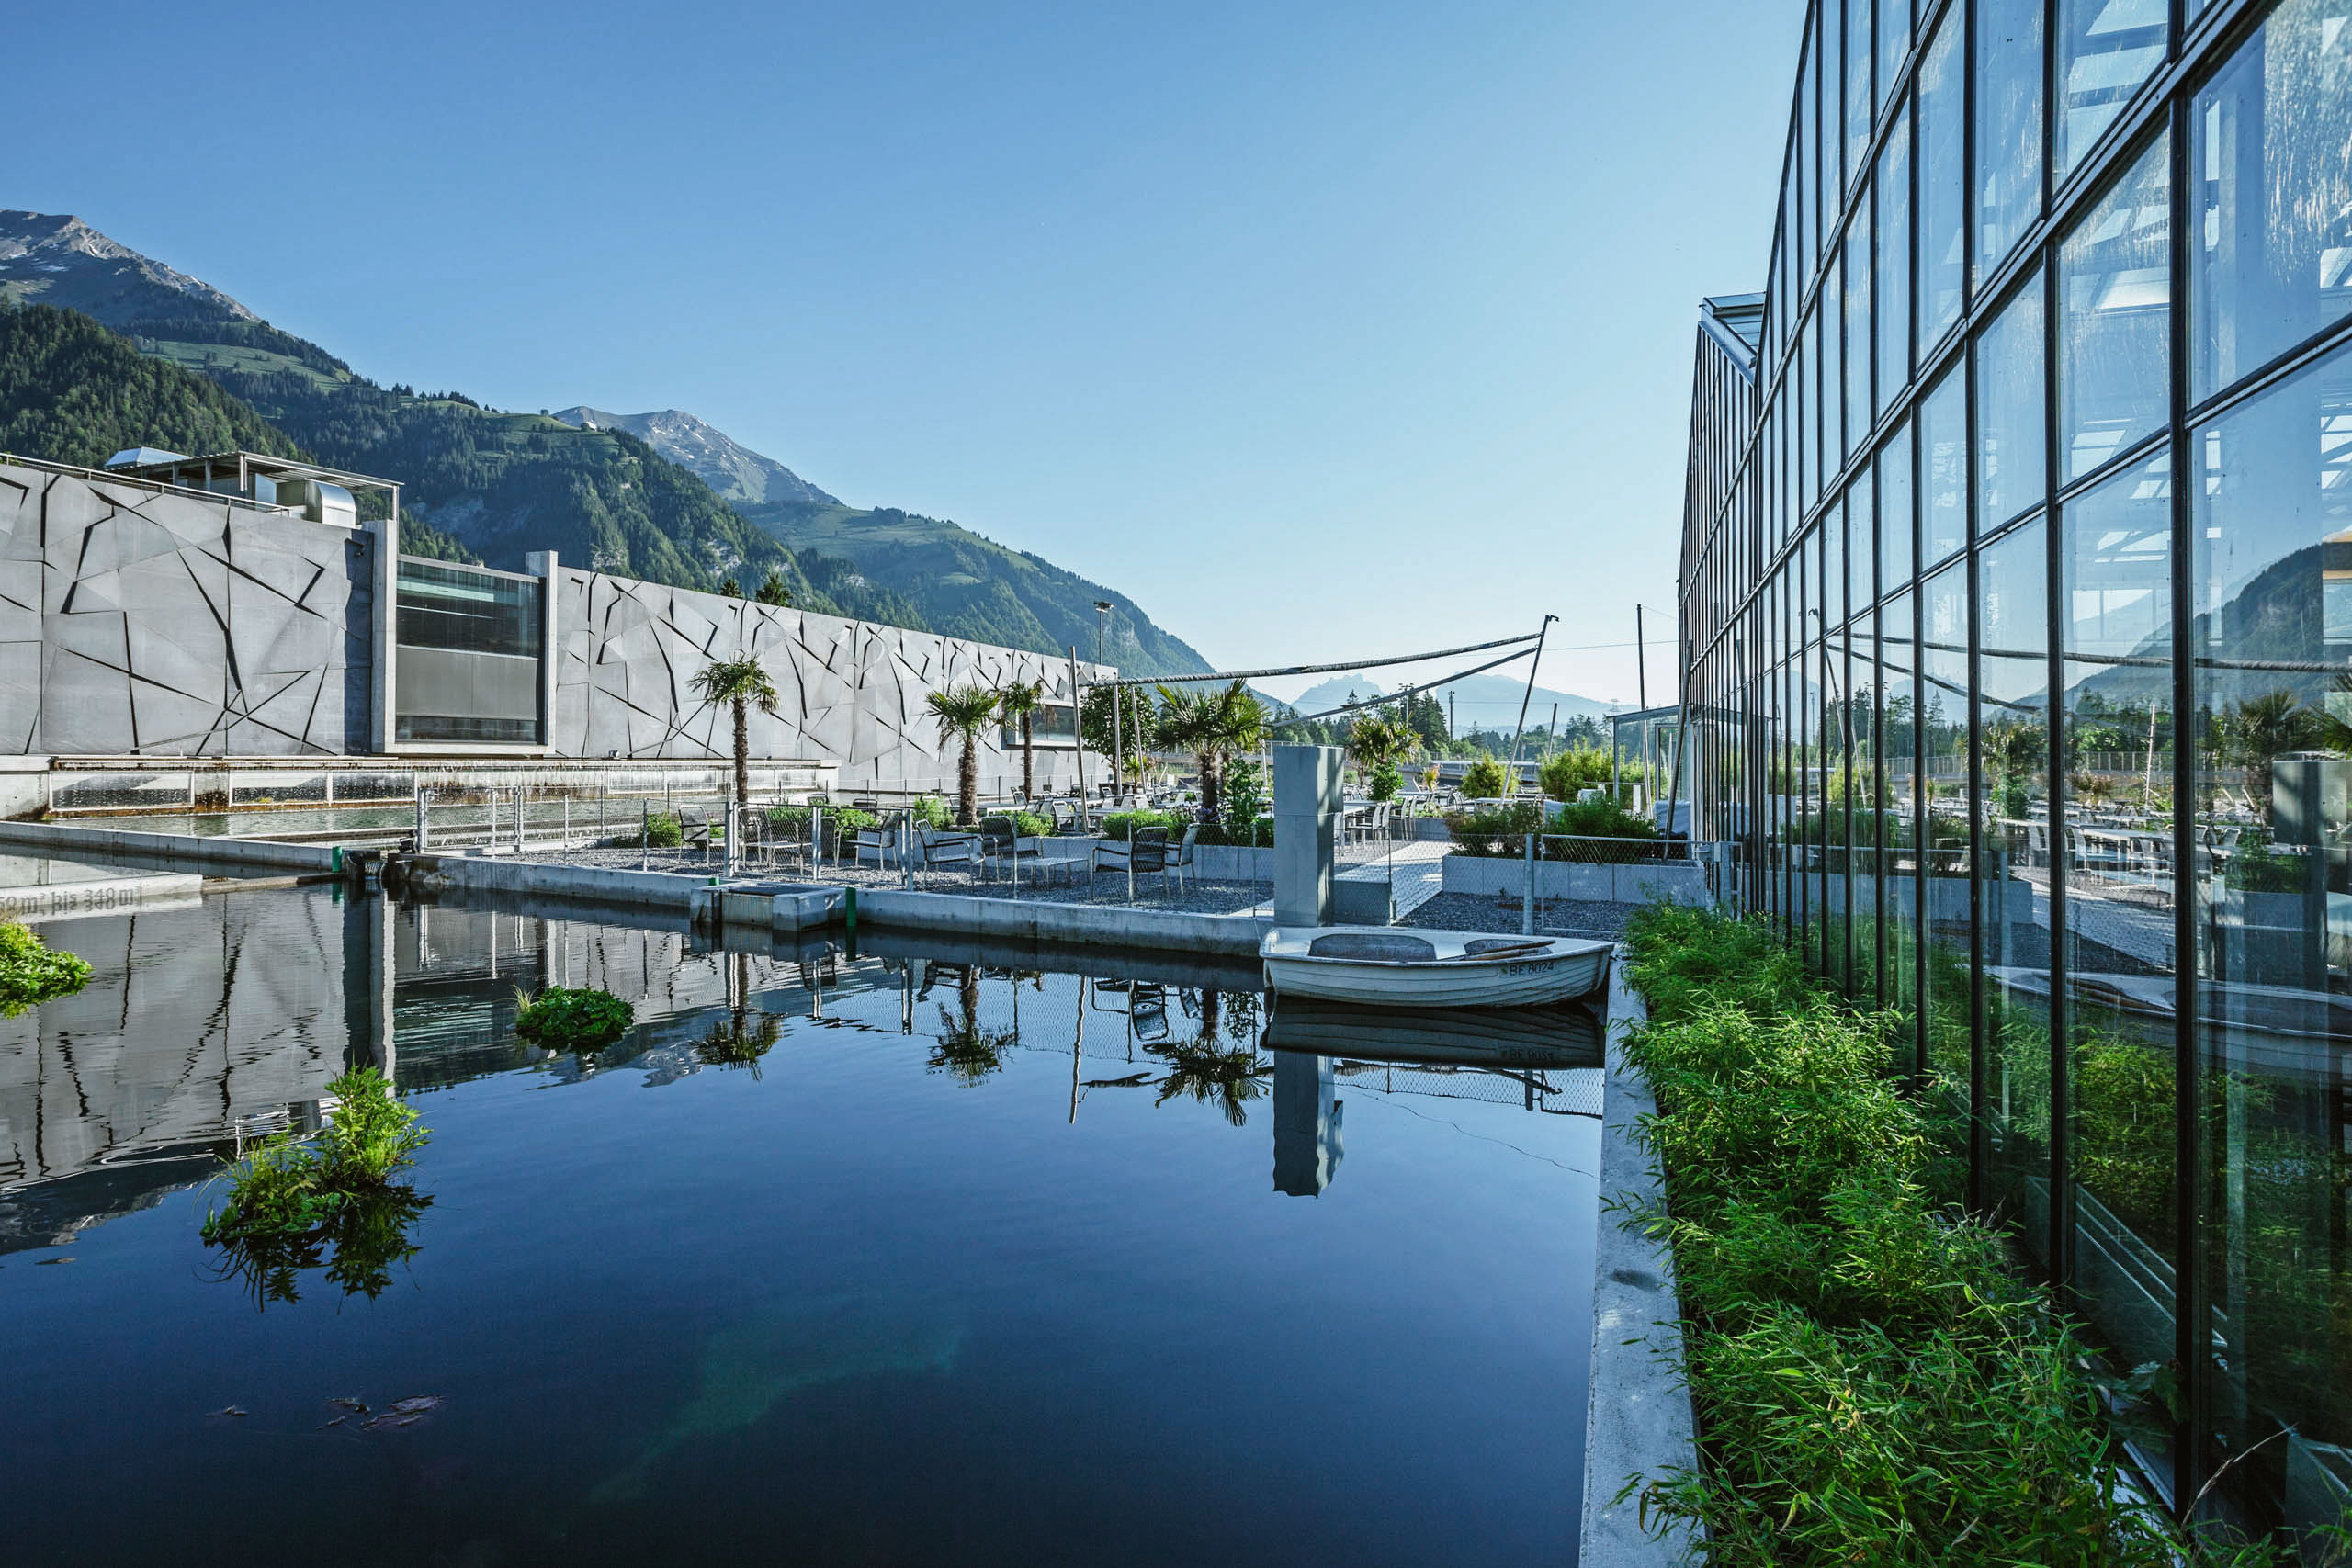 Swiss Deluxe Hotels Stories Summer 2020 Oona Caviar 01 Tropenhaus 1 Gross Ecirgb